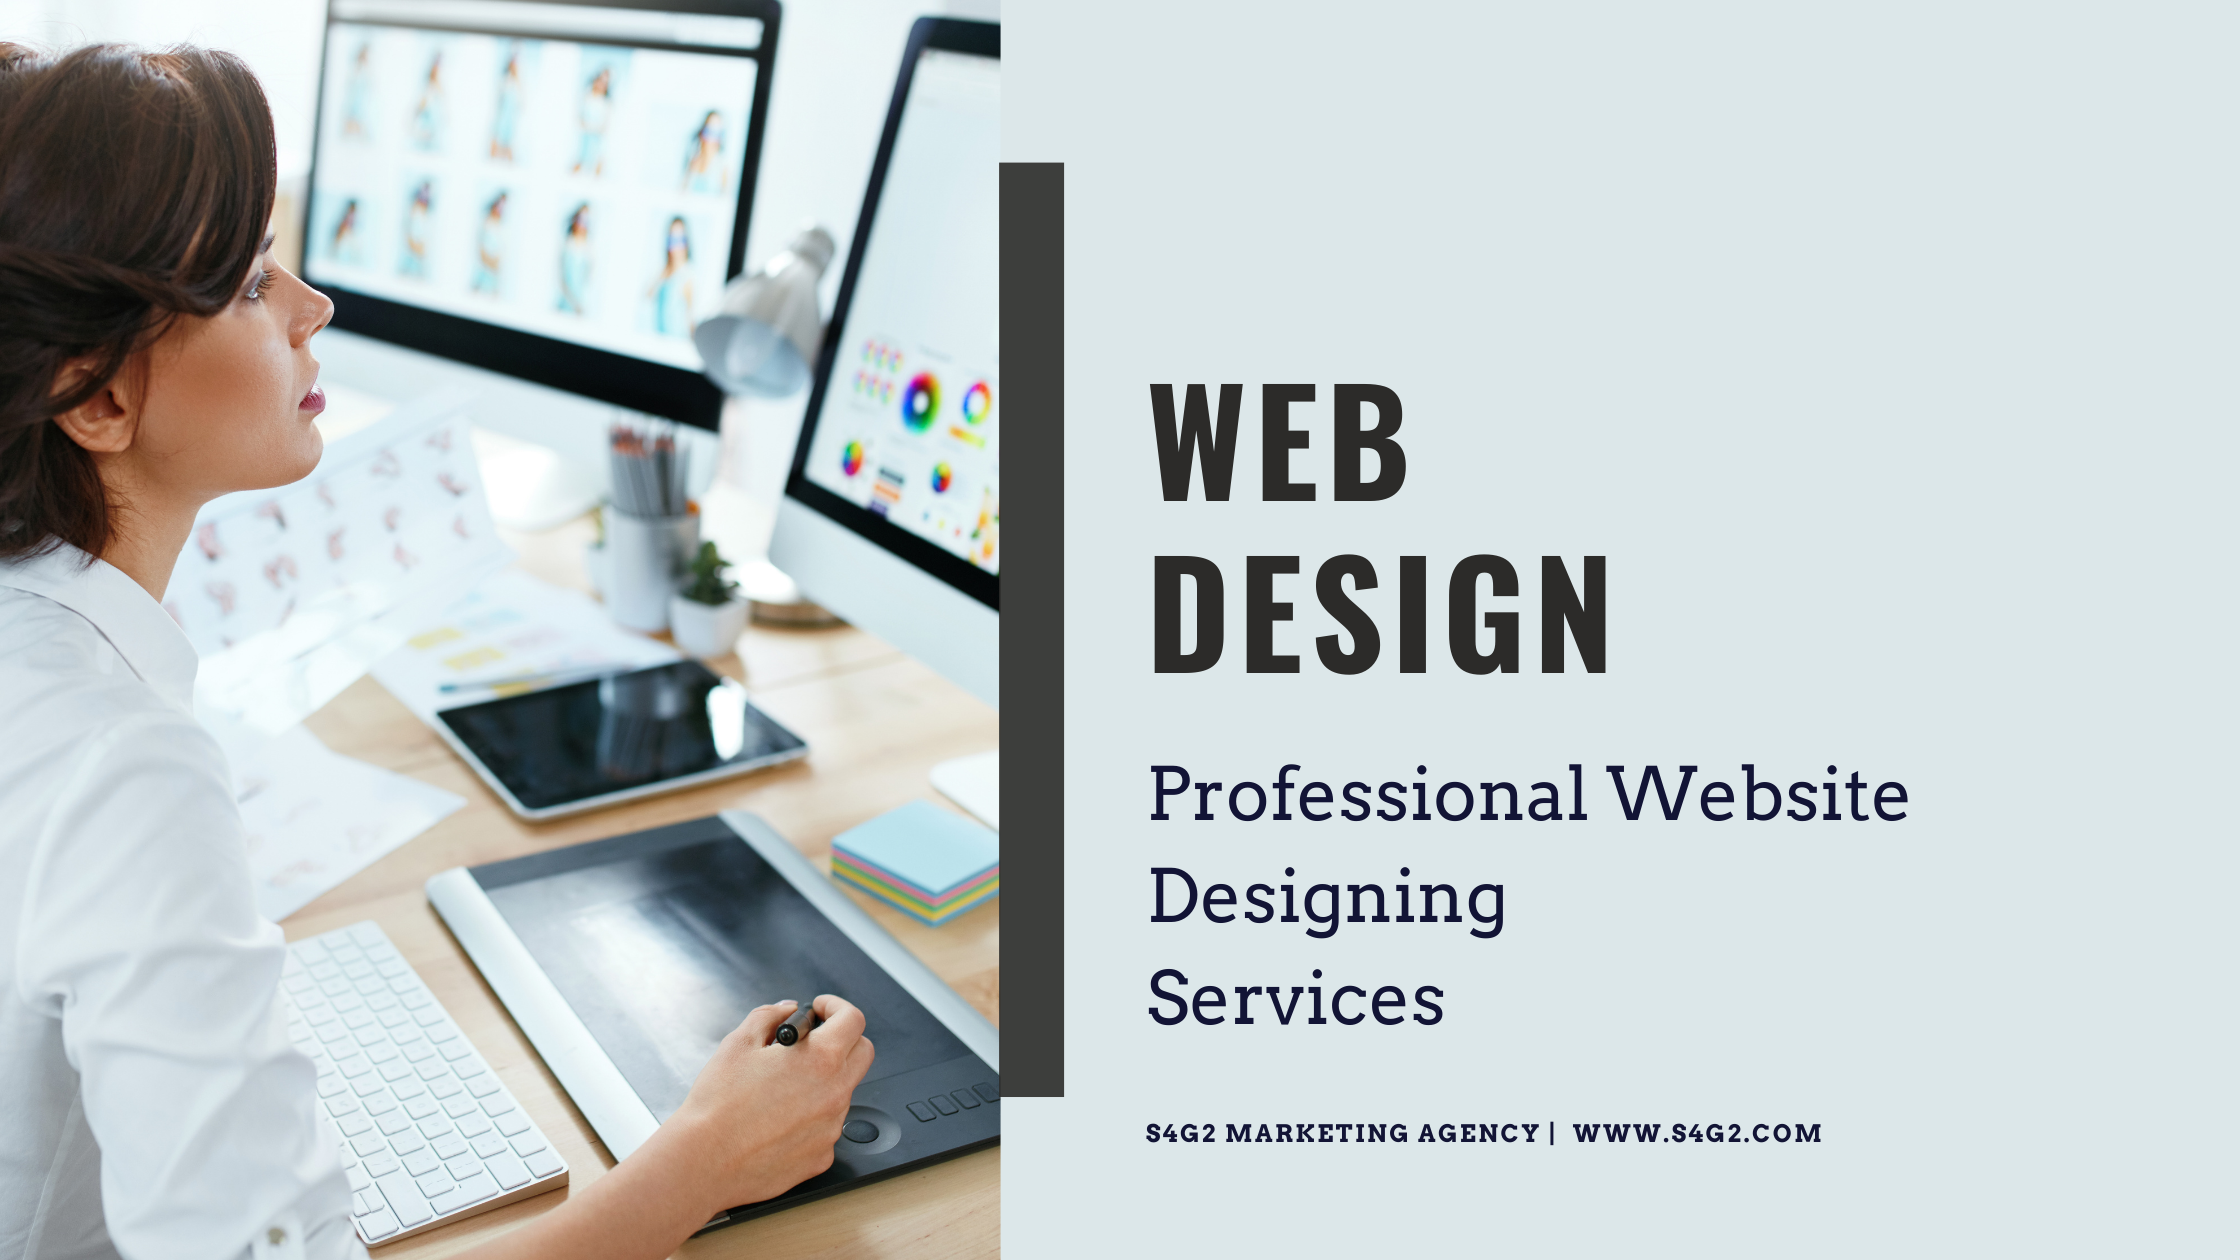 Professional Website Designing